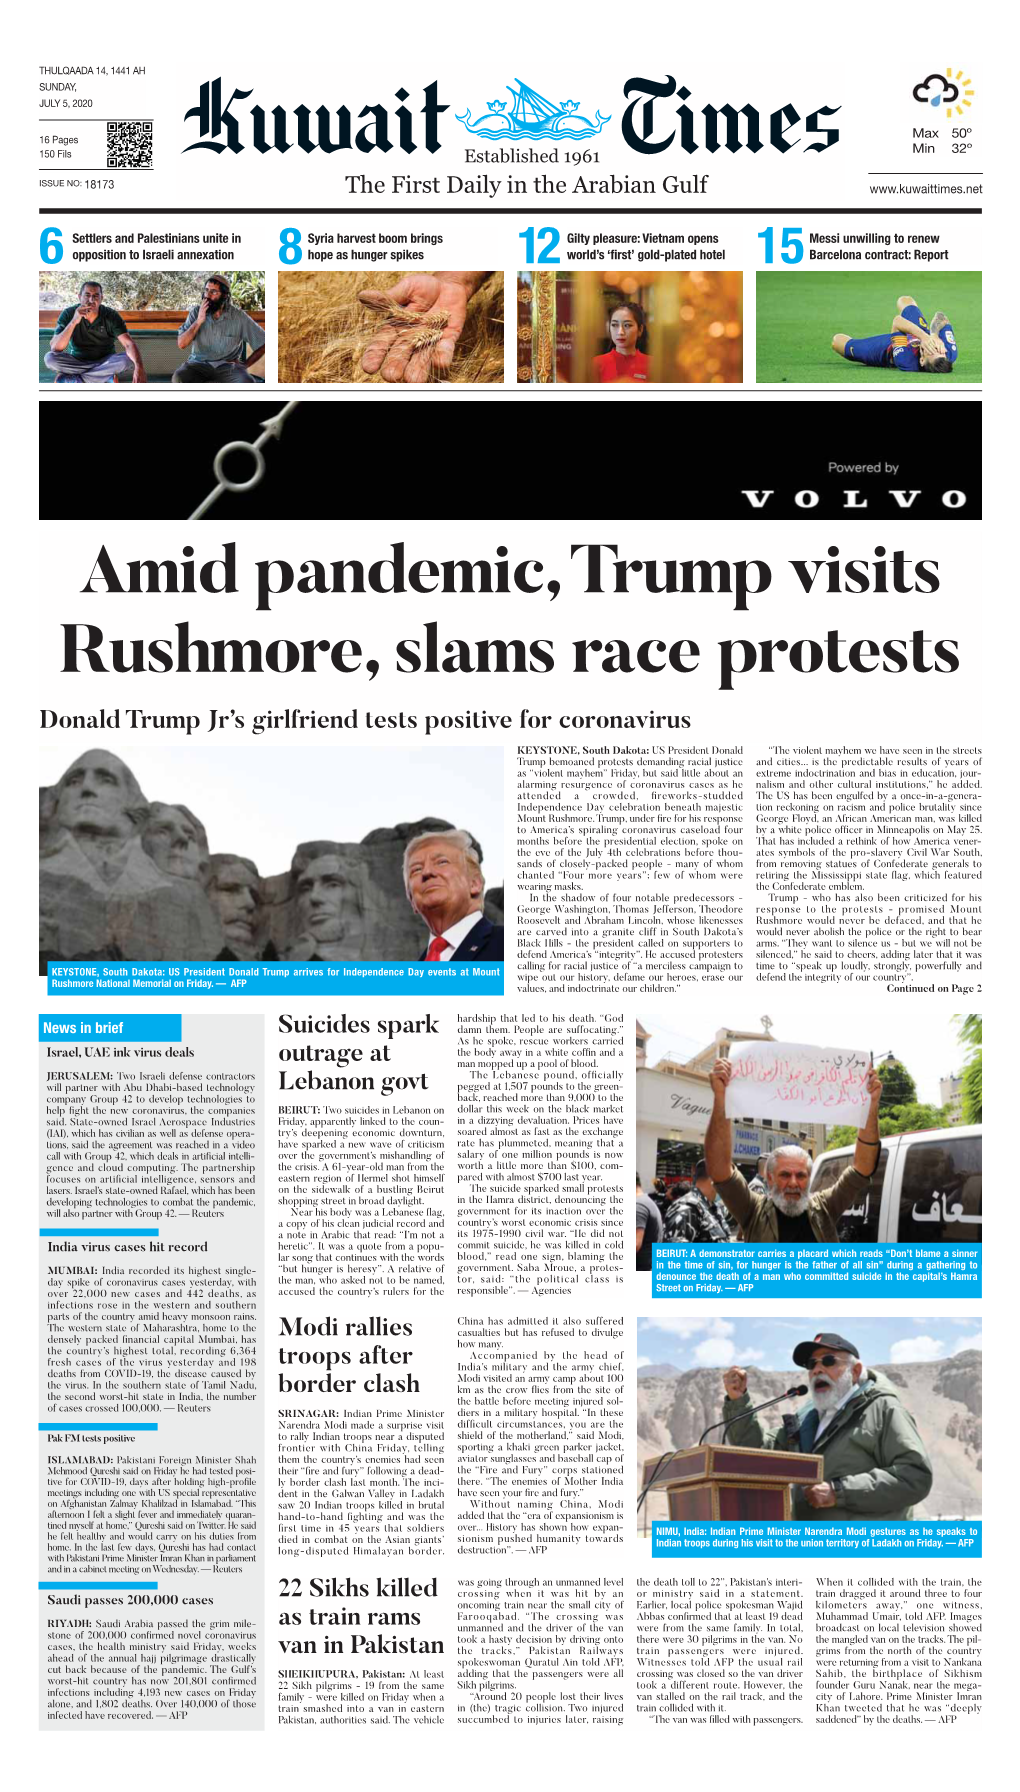 Amid Pandemic, Trump Visits Rushmore, Slams Race Protests